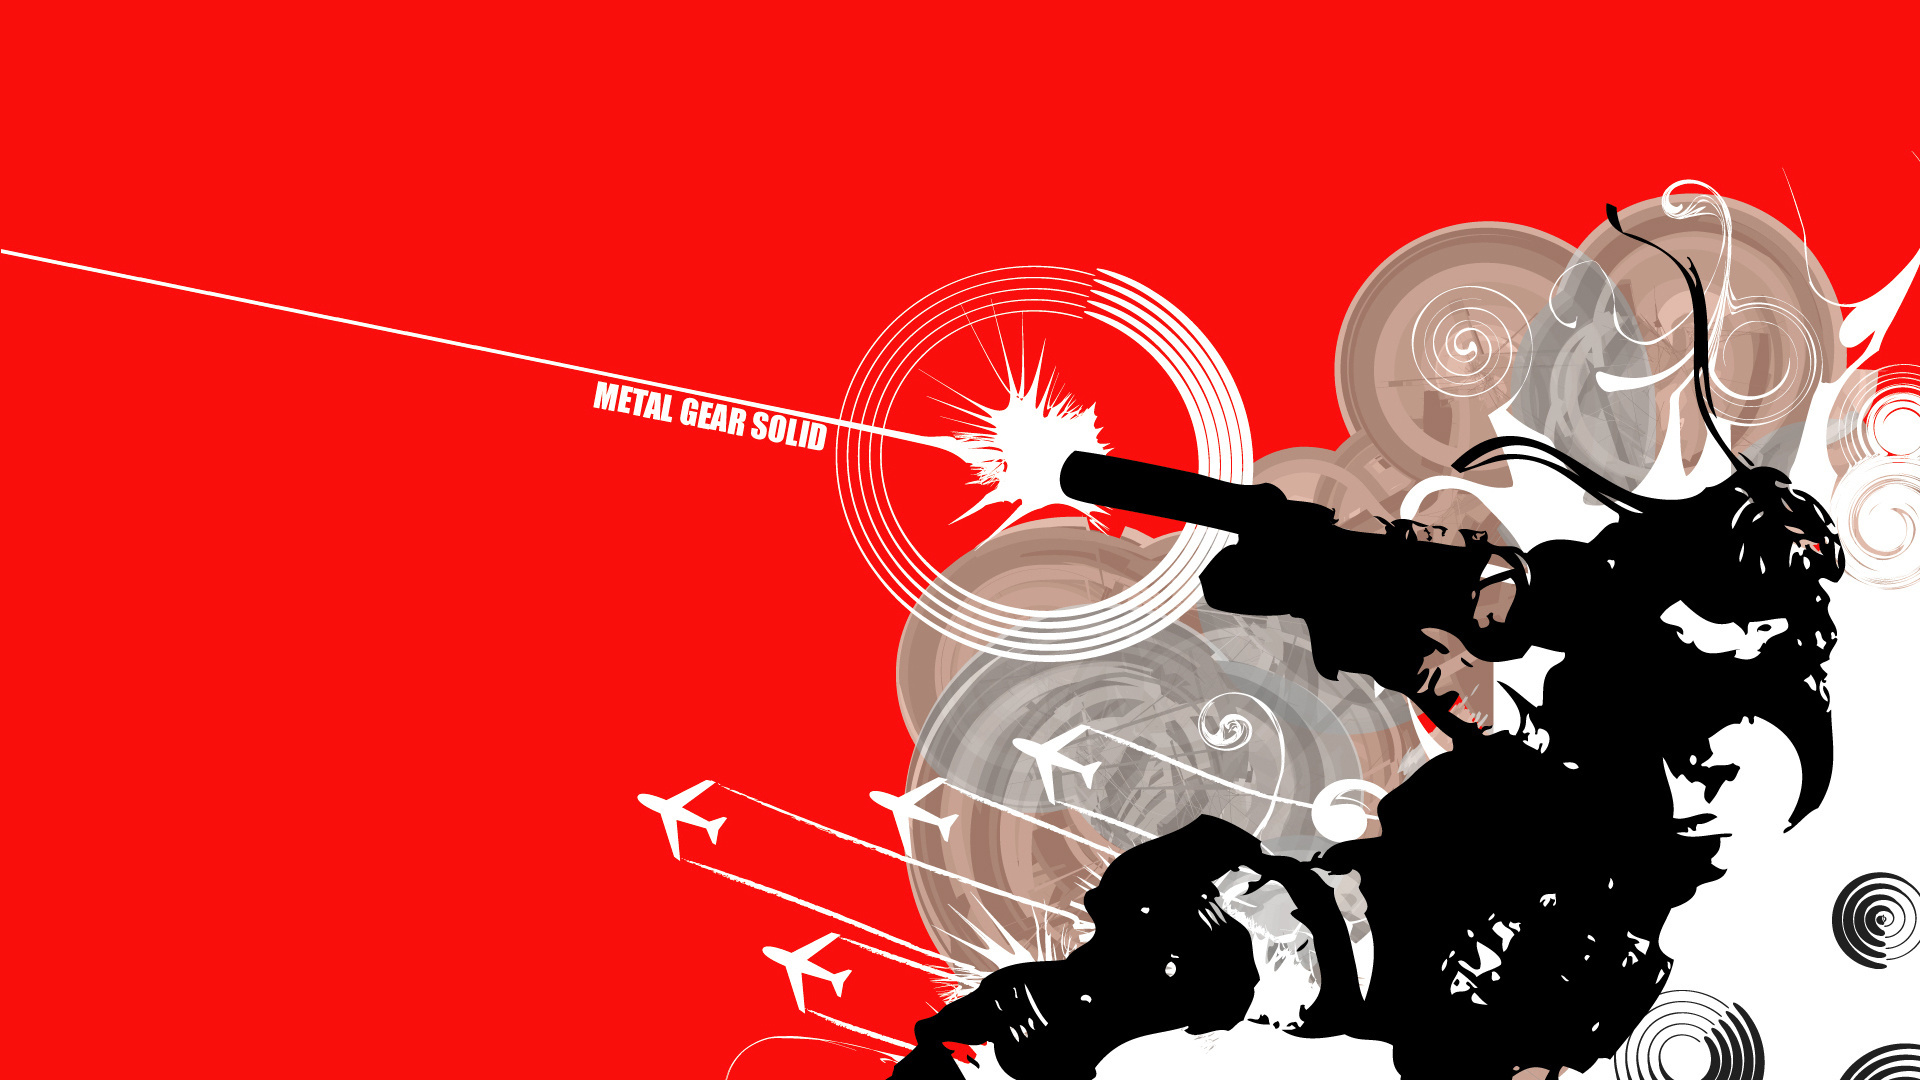 Metal Gear Solid 1080p HD Gaming Wallpaper Game